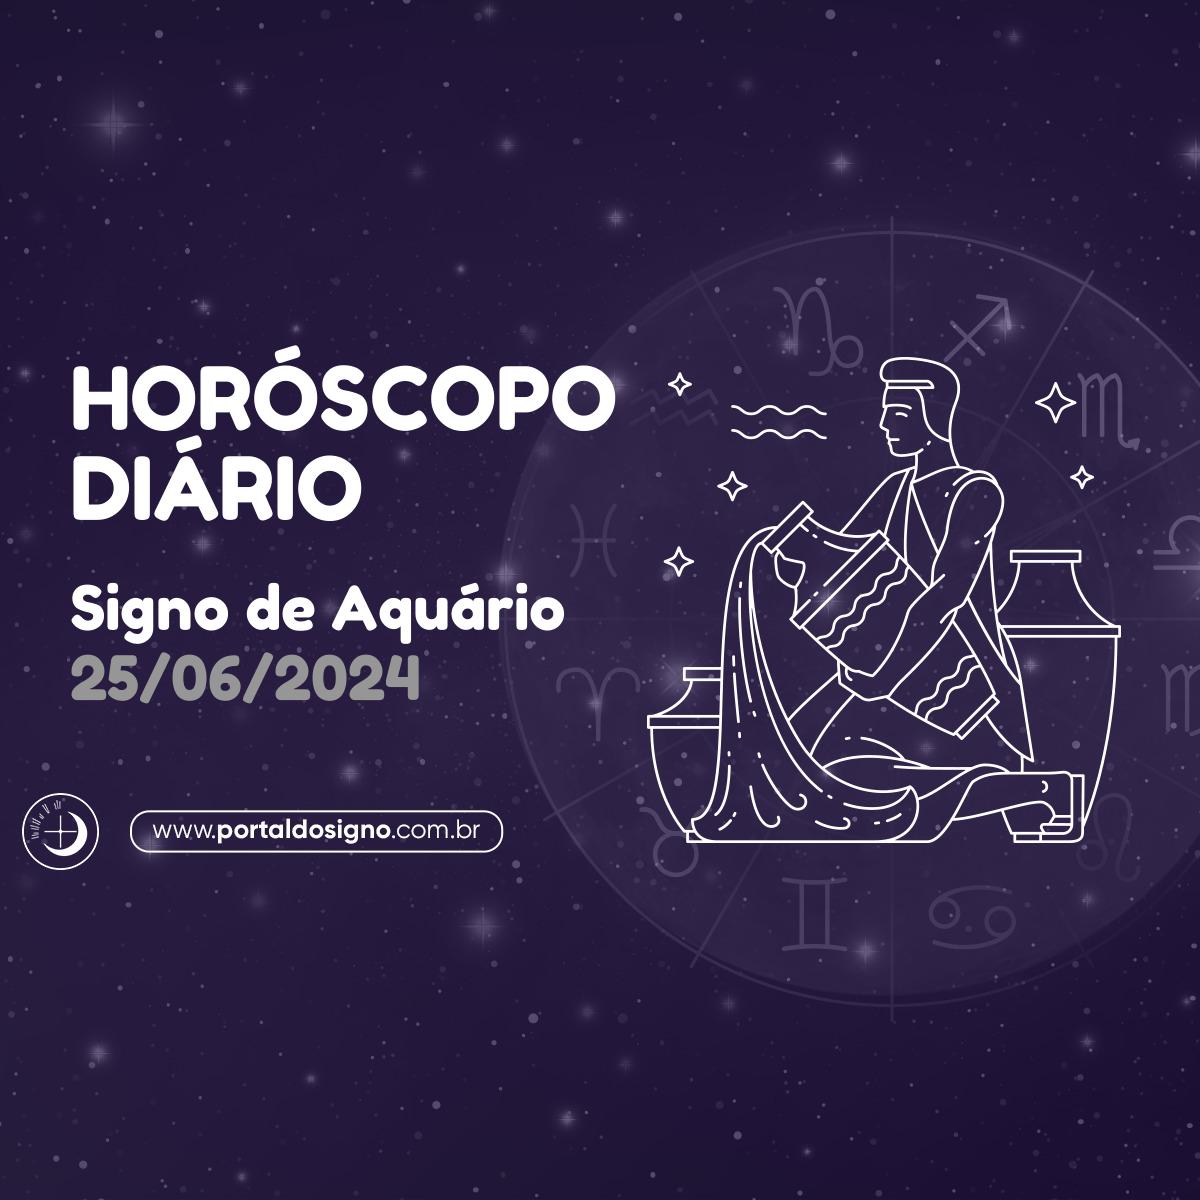 Horóscopo diário para Aquário em 25/06/2024